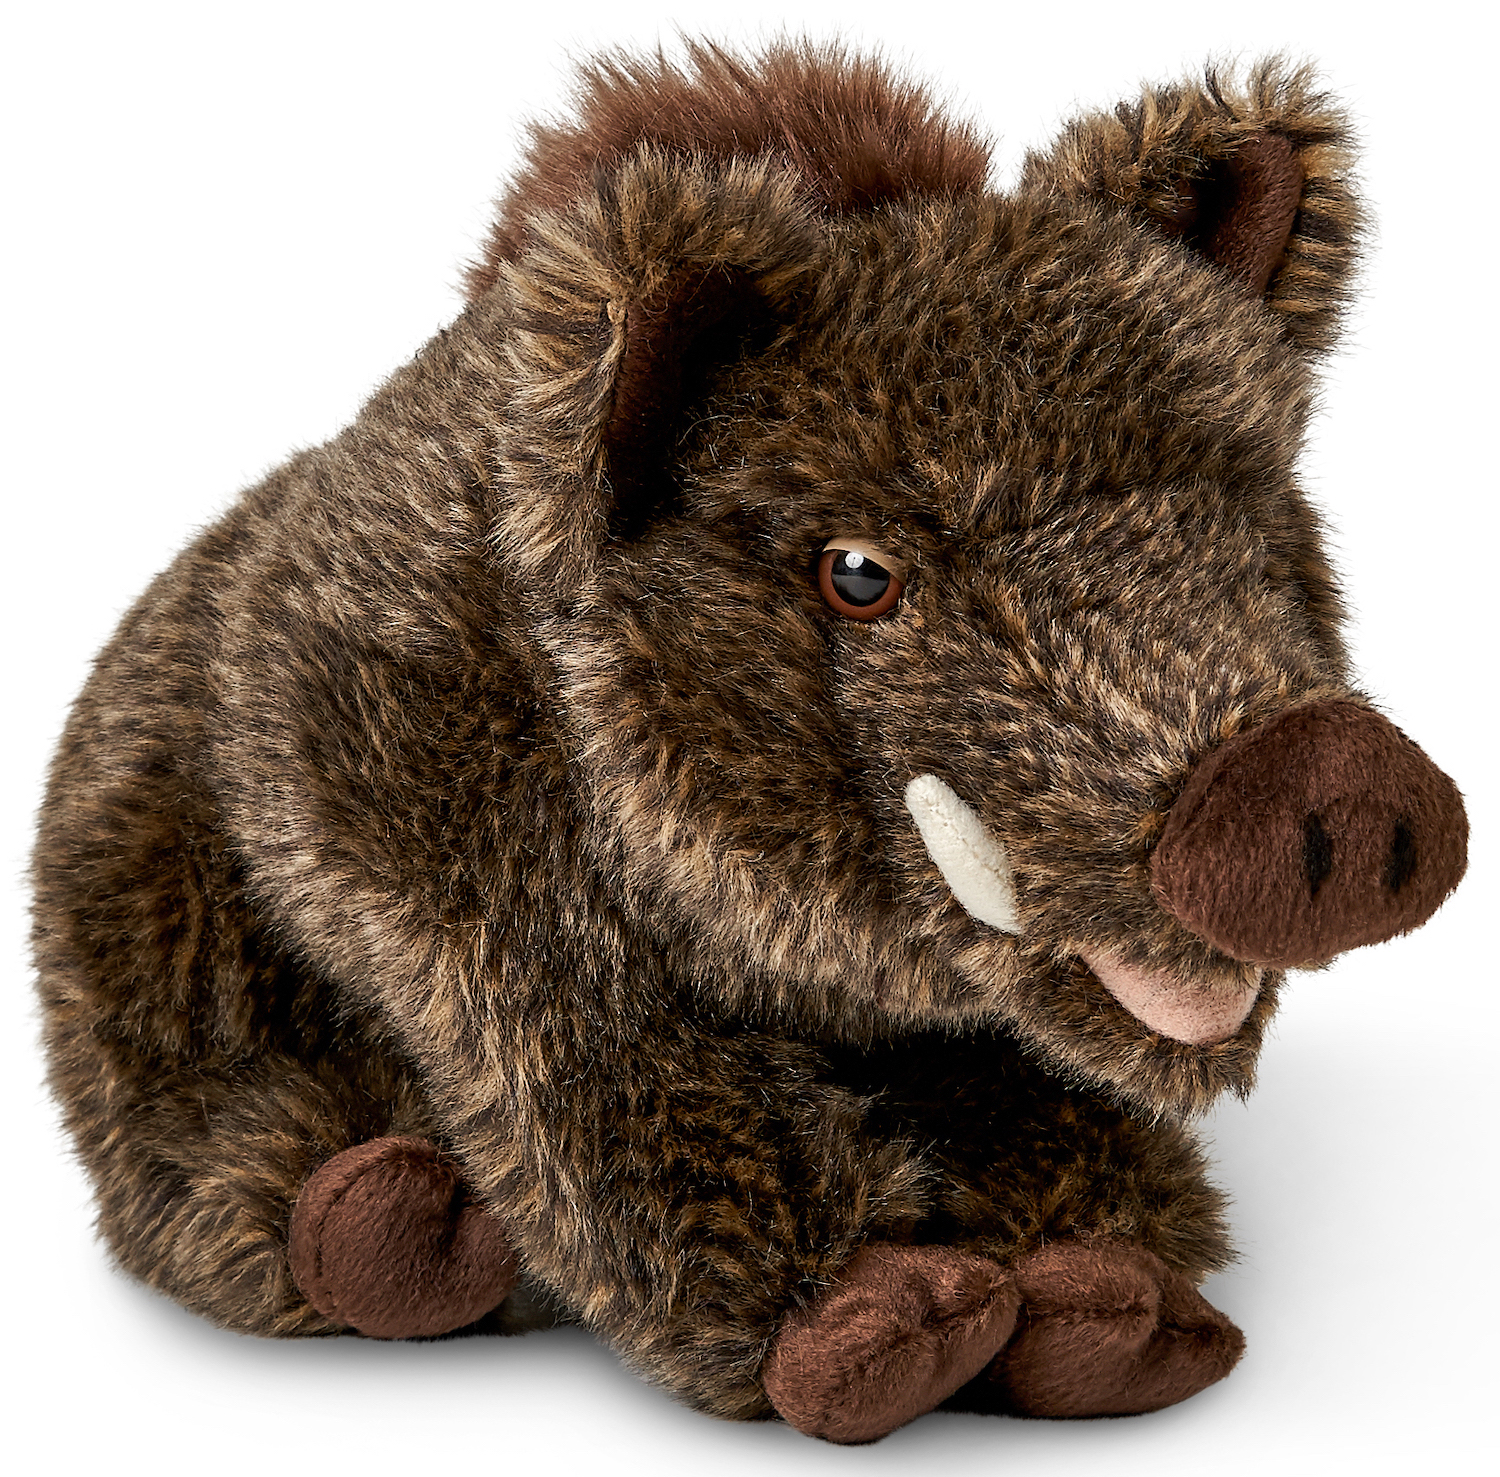 Boar, sitting - 18 cm (height) - plush pig, boar - soft toy, cuddly toy